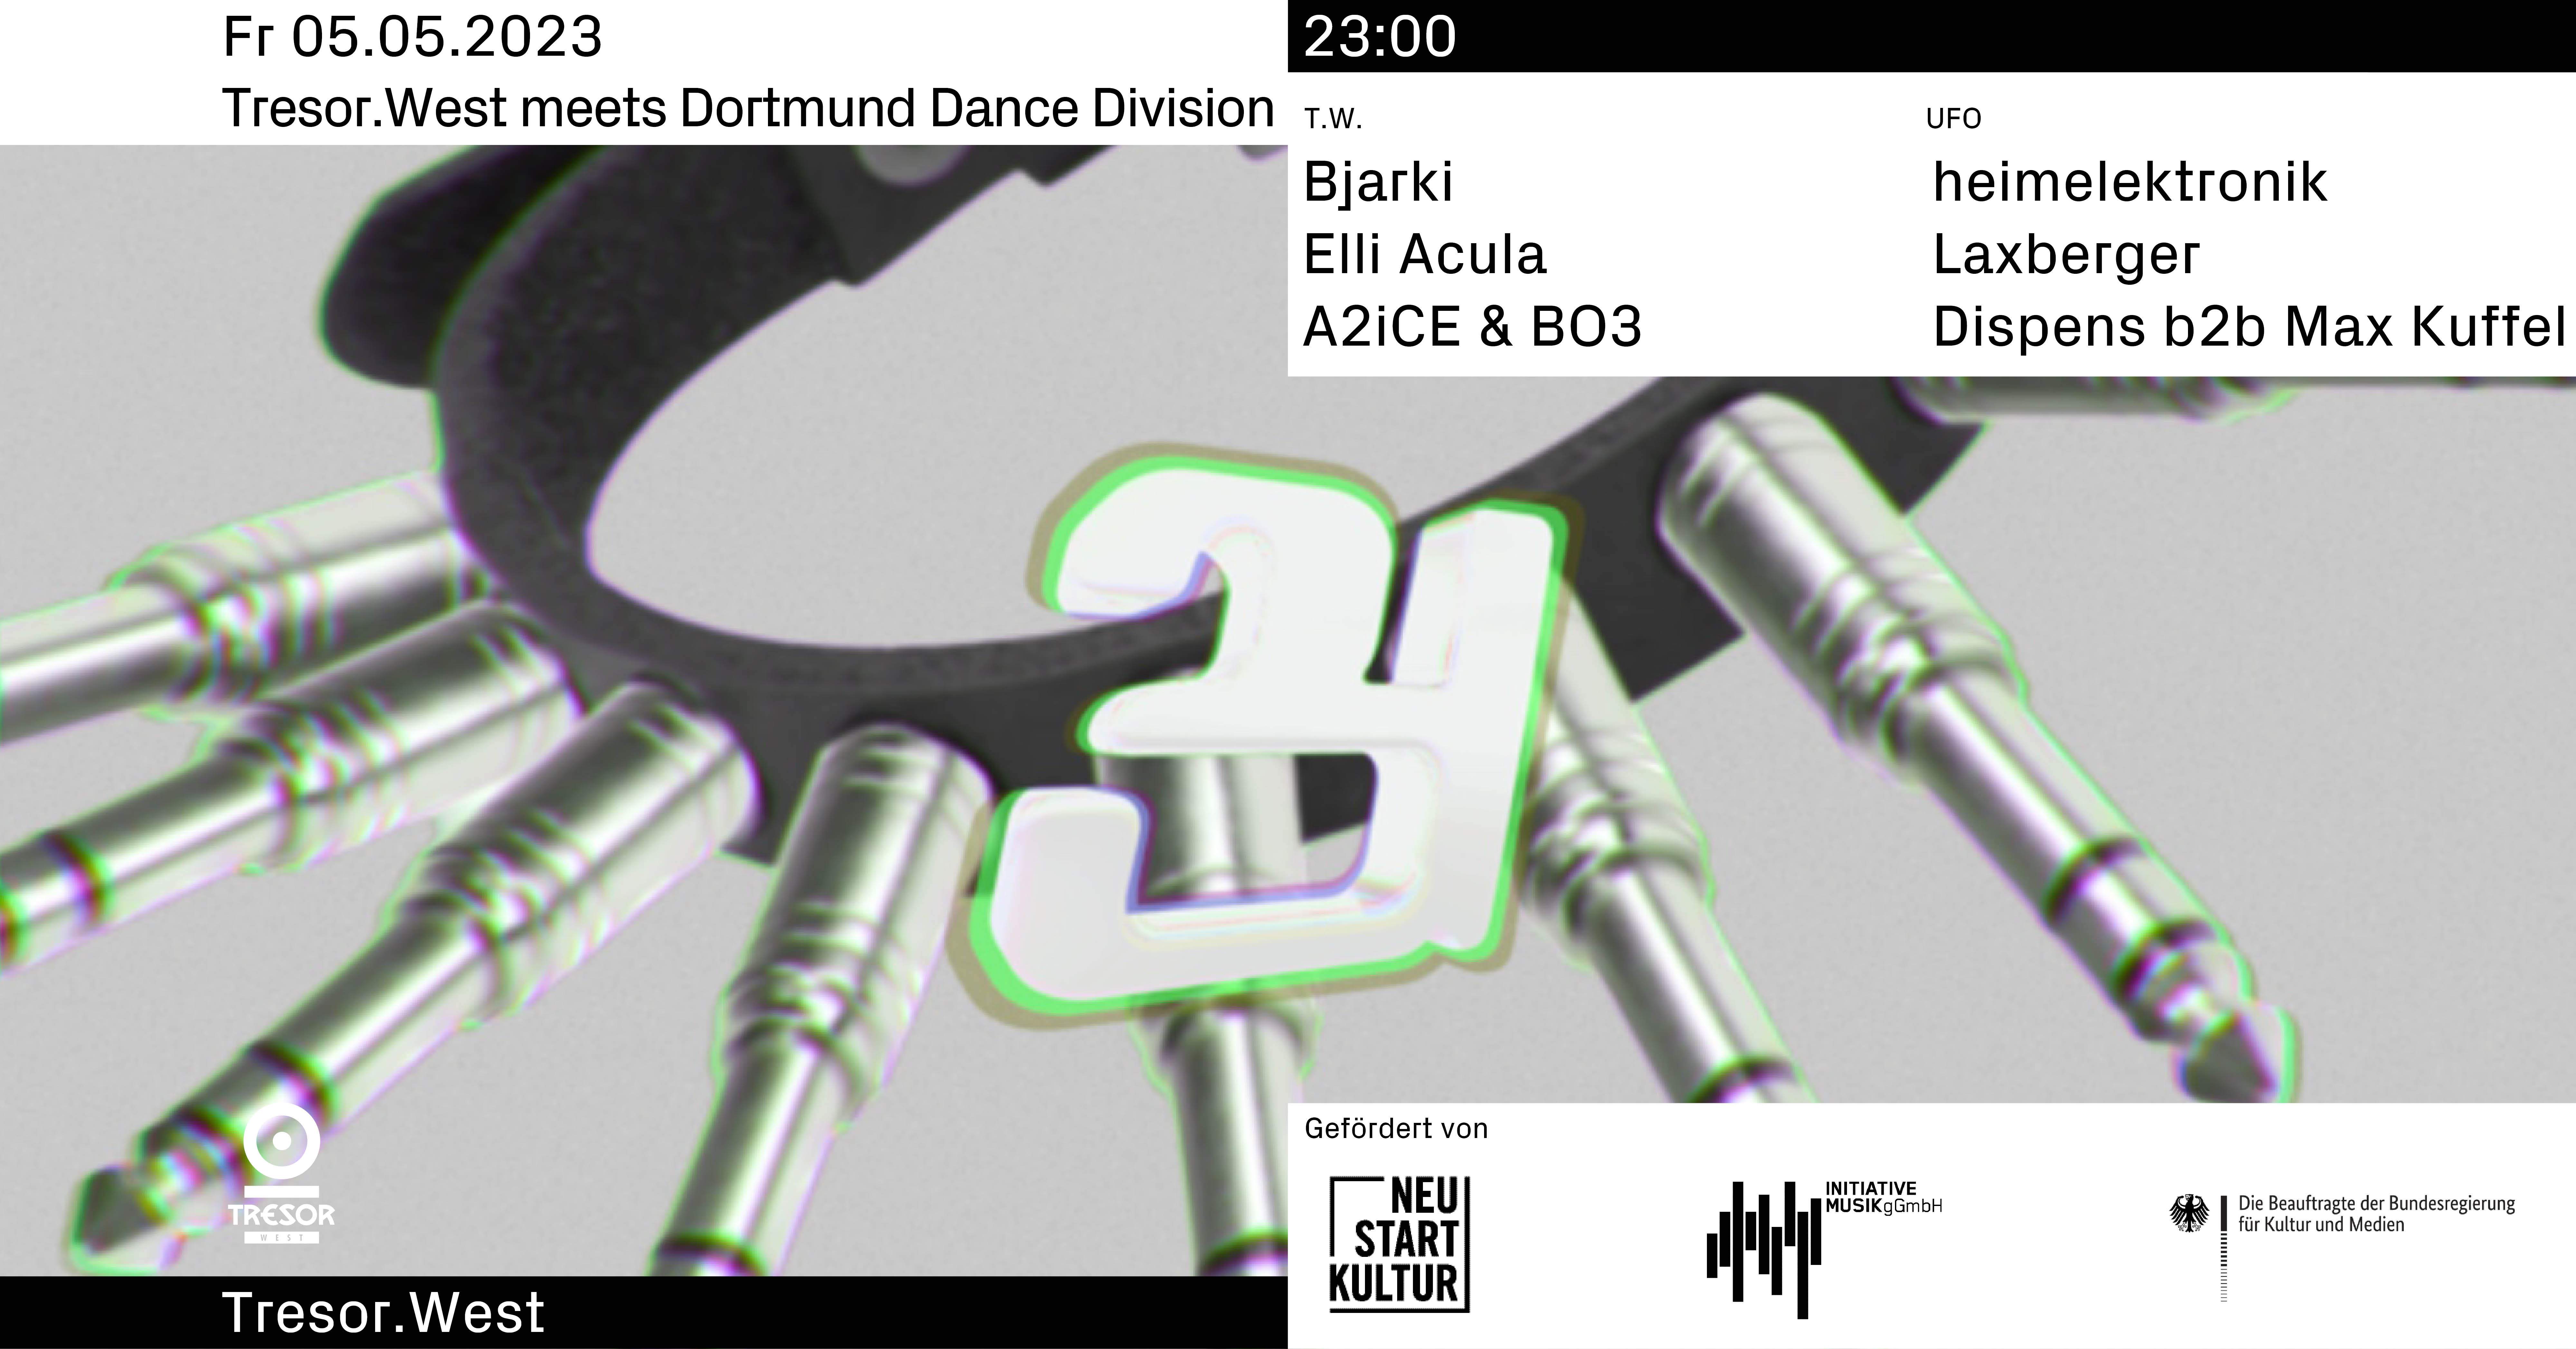 Tresor.West meets Dortmund Dance Division - Flyer front